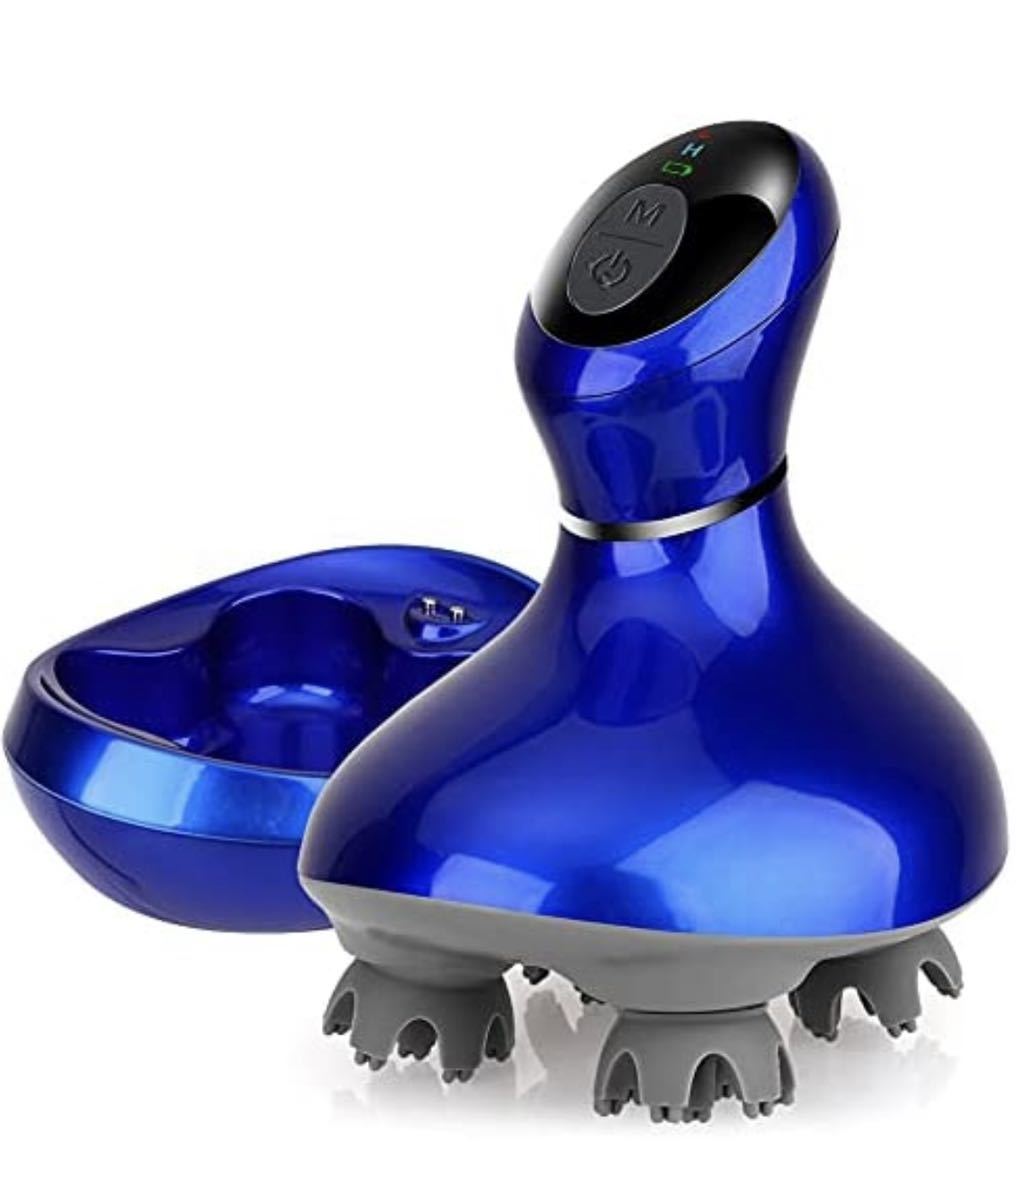 電動頭皮ブラシ 振動版 IPX7防水 乾湿両用 日本3D技術 10分定時オフ 浴室利用可 USB充電 コードレス家庭用 男女兼用 父の日 誕生日 母の日